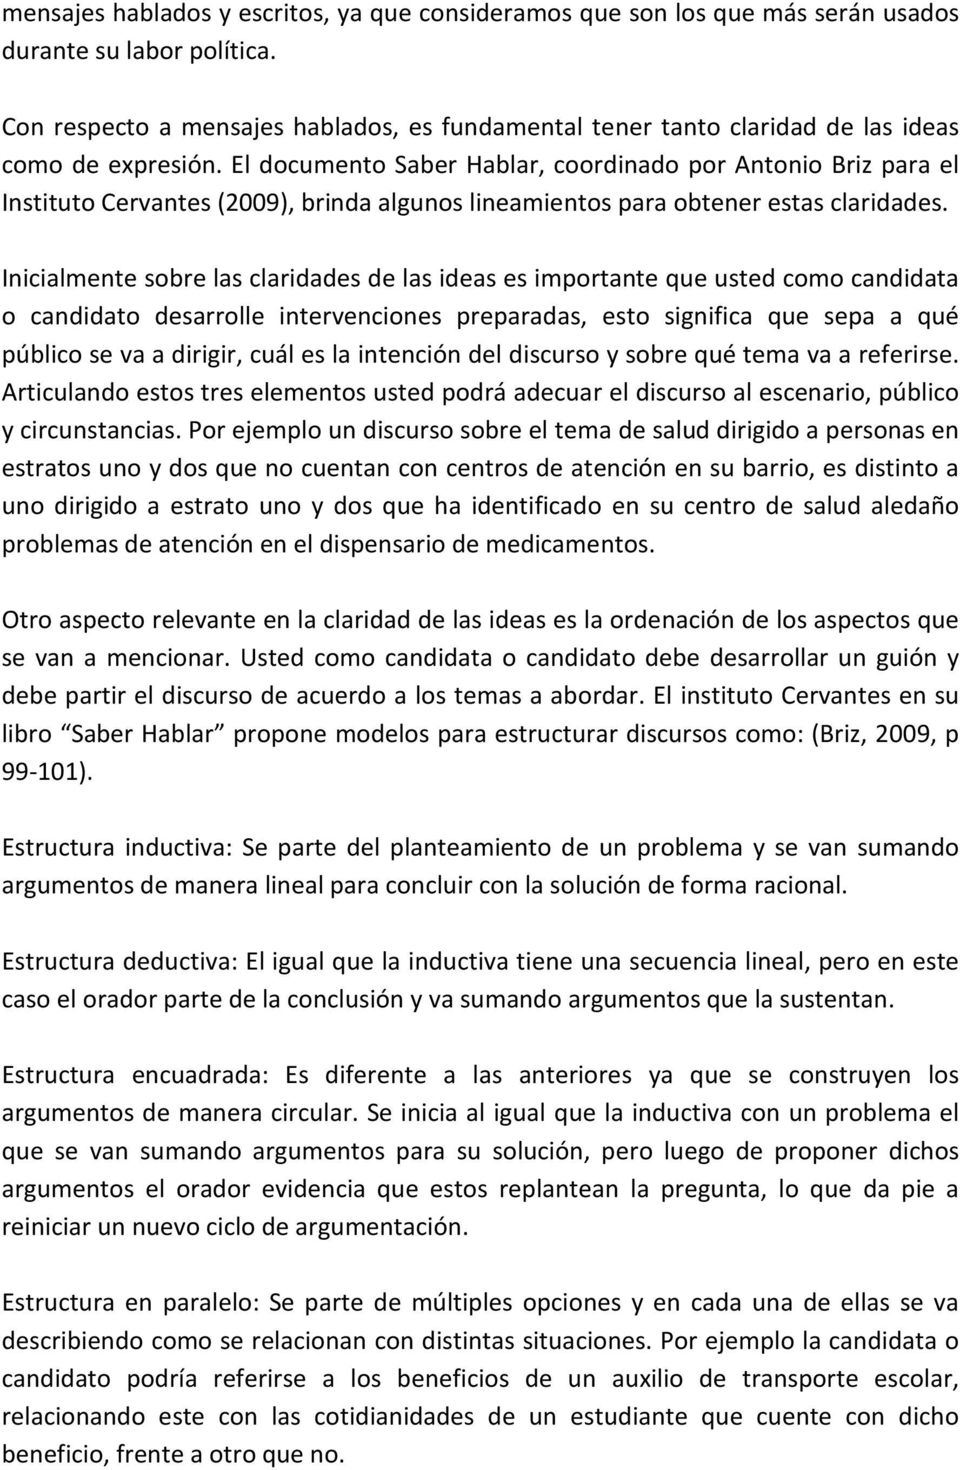 El documento Saber Hablar, coordinado por Antonio Briz para el Instituto Cervantes (2009), brinda algunos lineamientos para obtener estas claridades.